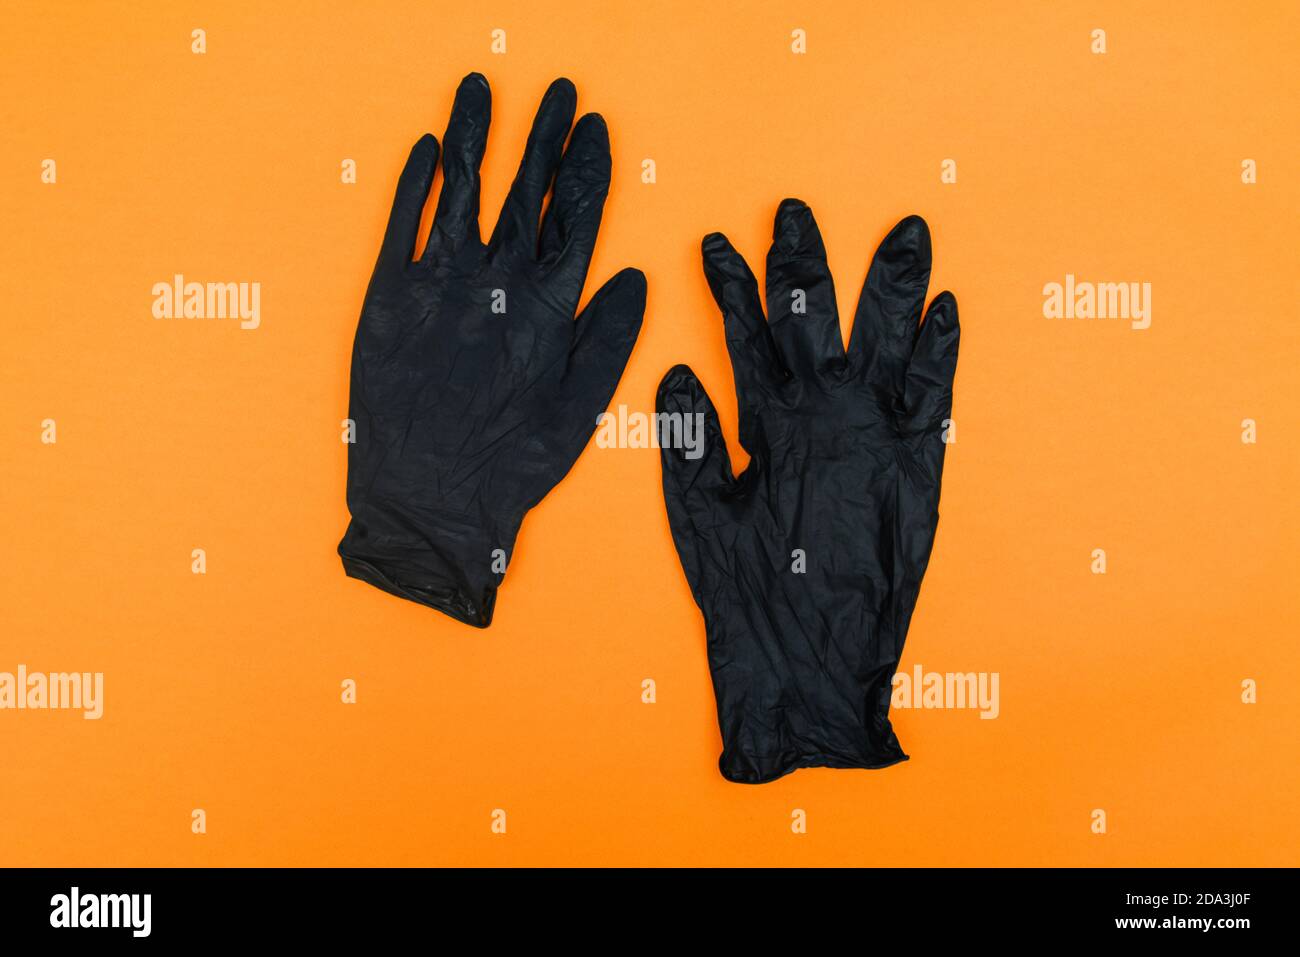 Guantes desechables negros aislados sobre fondo naranja. Protección de manos contra el coronavirus, higiene. Vista superior, disposición plana Foto de stock